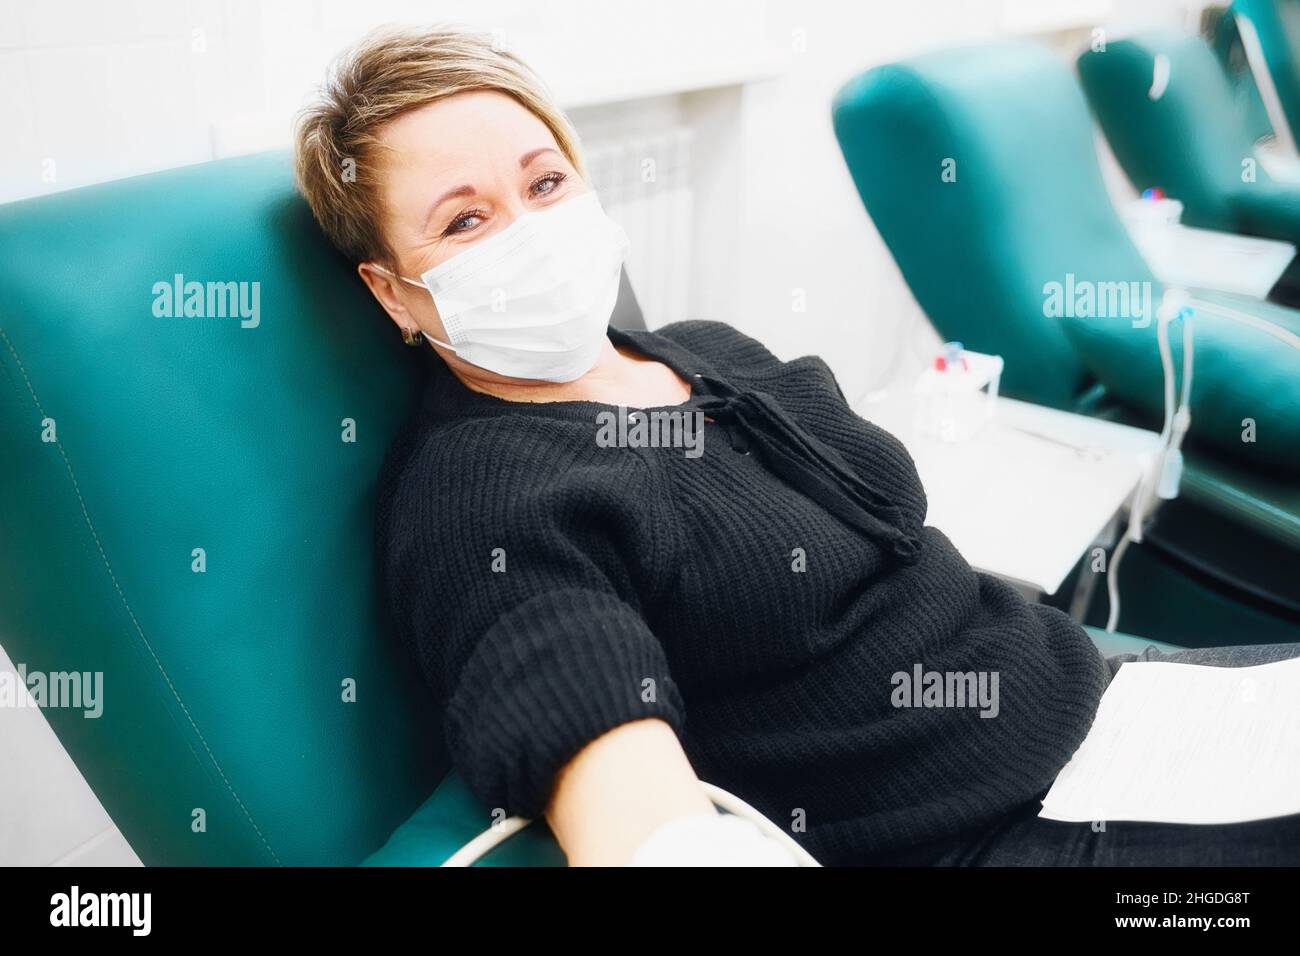 Una mujer de 40-50 años de edad con máscara médica en la cara se sienta en la silla y dona sangre de la vena. Donación y atención a los enfermos. Escena real. Foto de stock